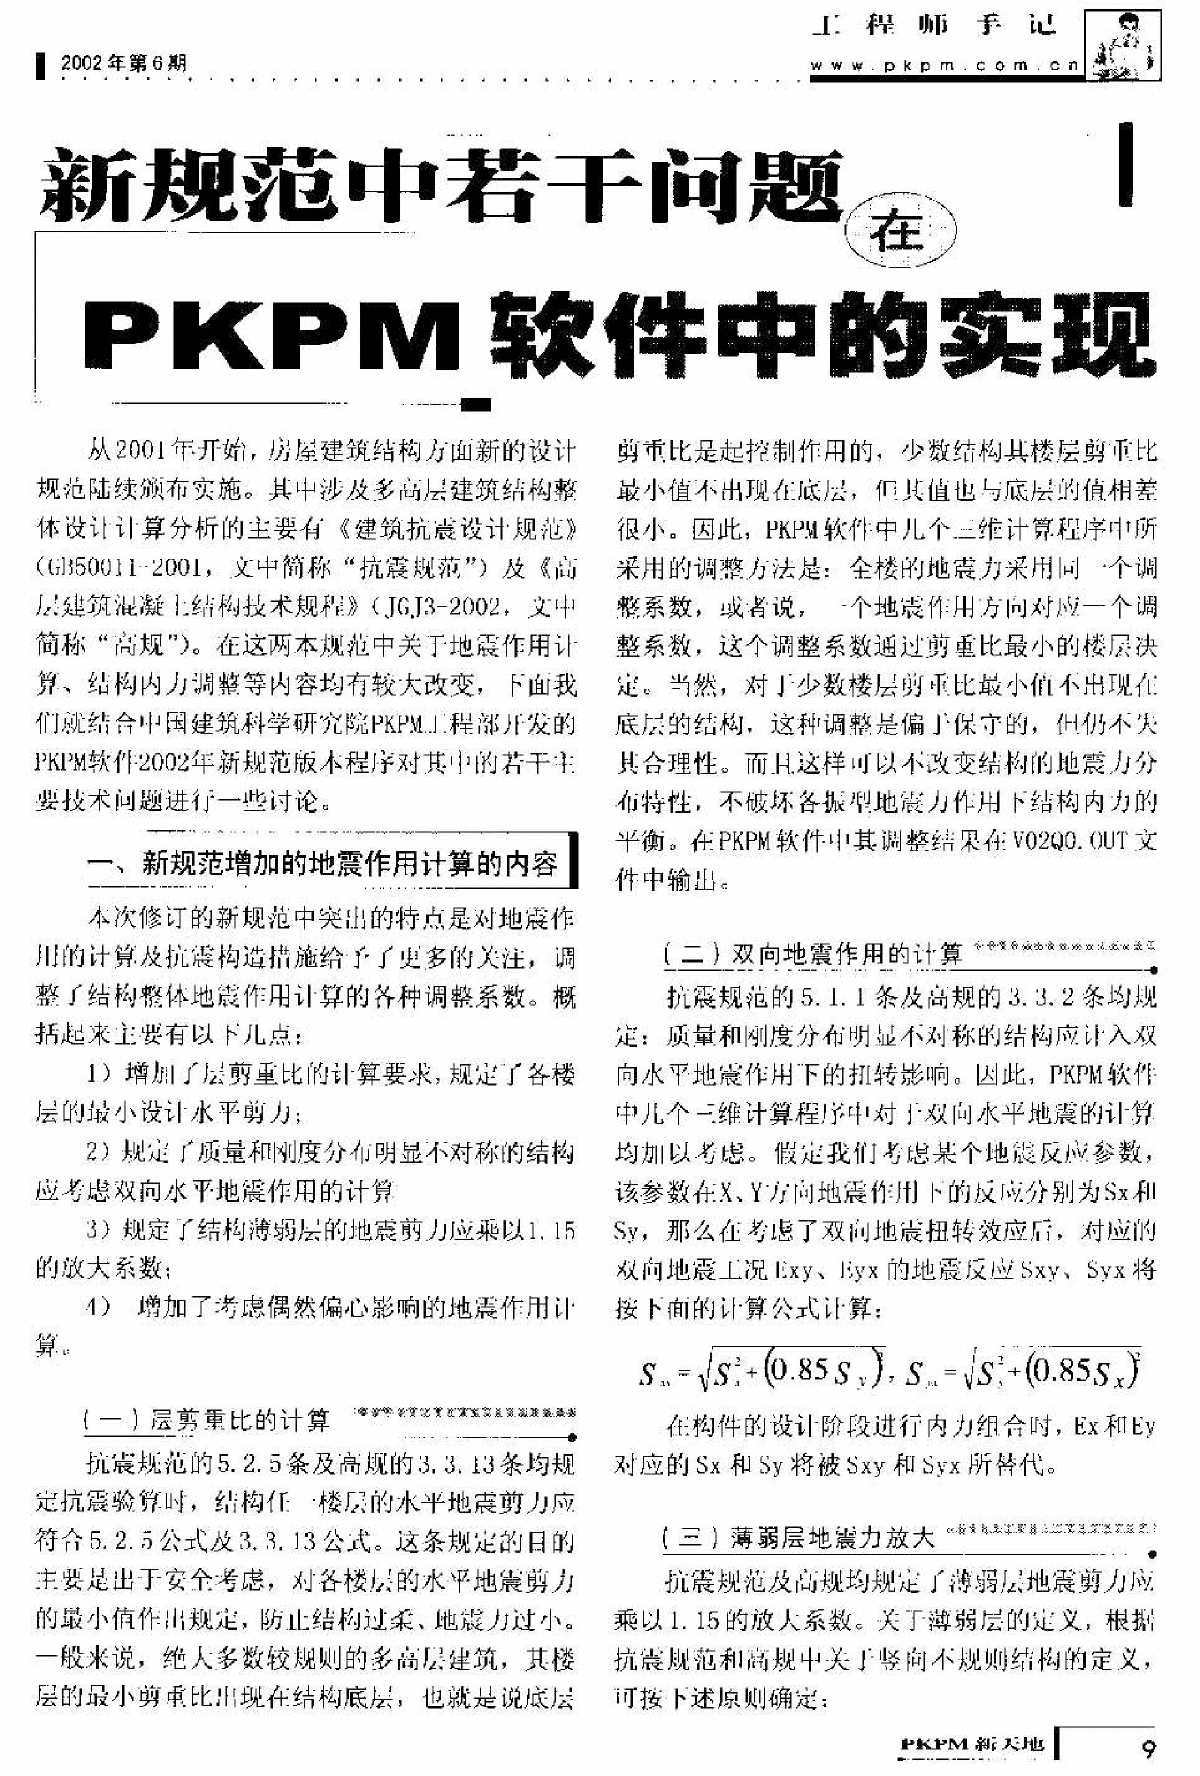 pkpm新天地2002年第6期